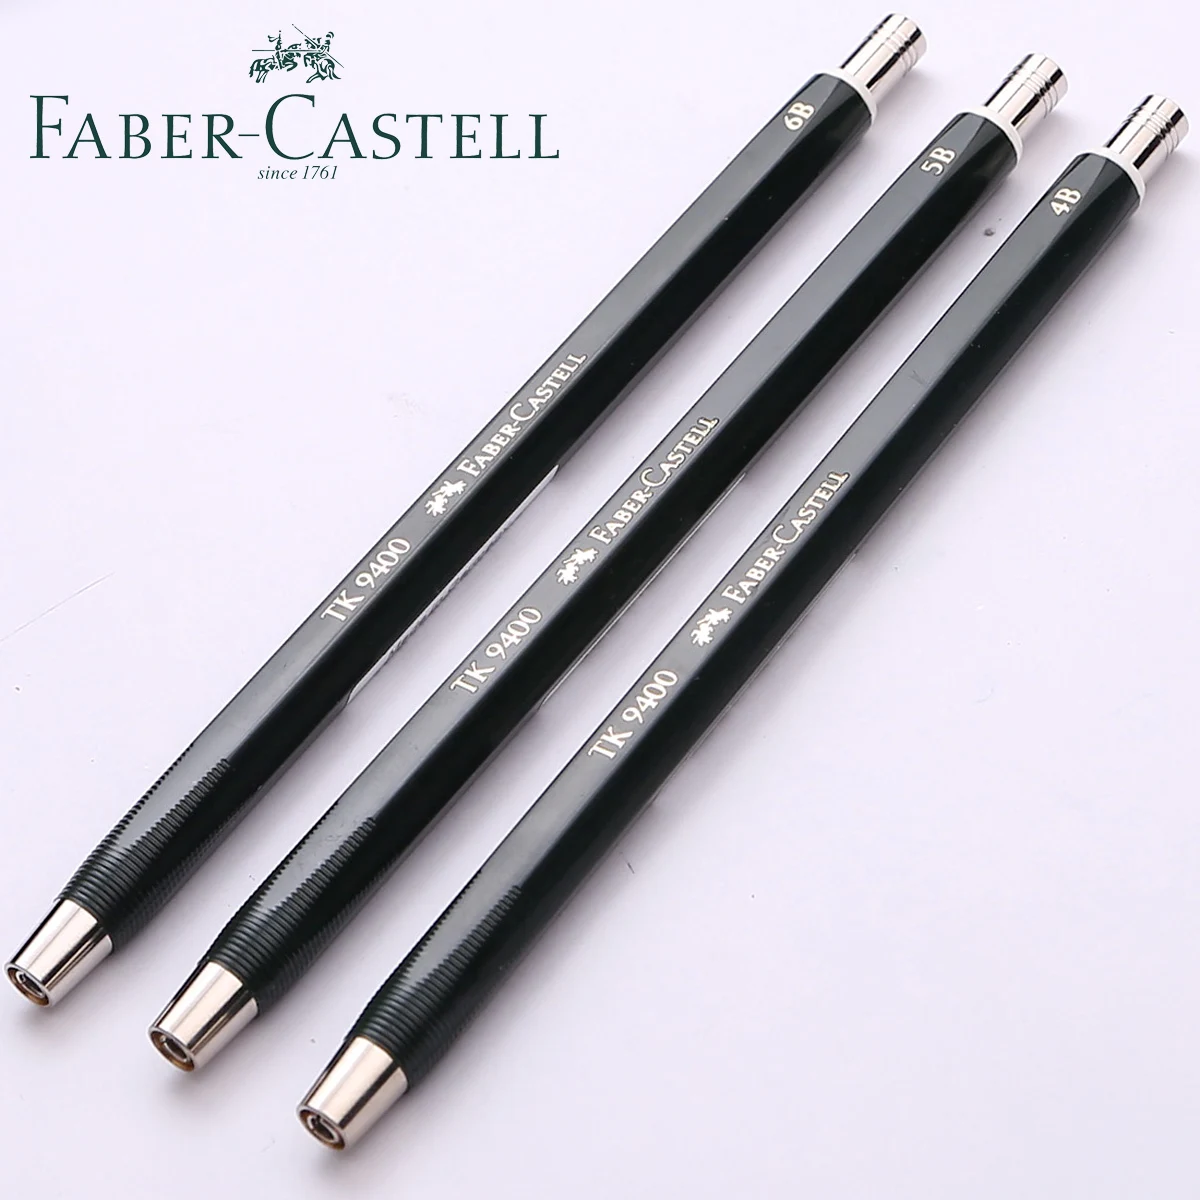 Германия Faber-castell TK-9400 Механический карандаш 3,15 мм для рисования механическим карандашом 1ШТ